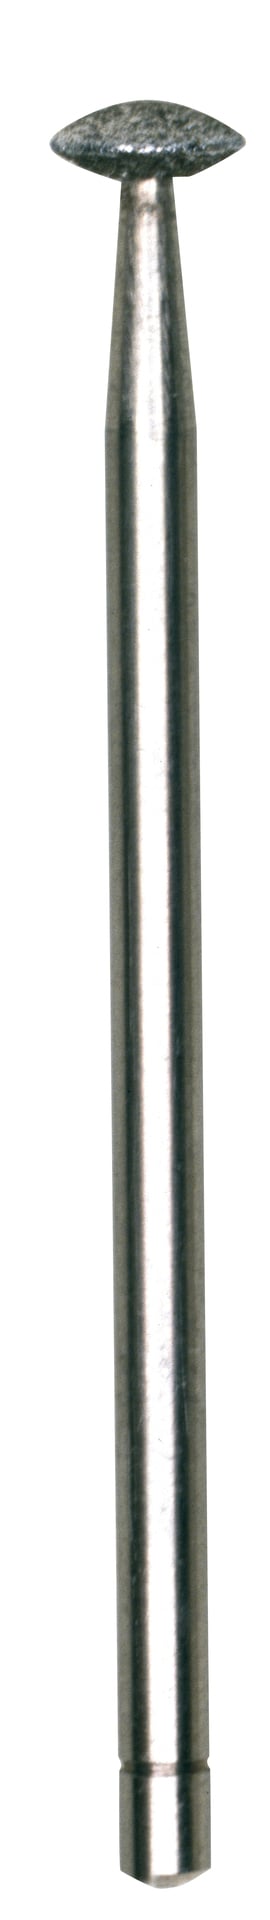 PROXXON Diamantschleifstift, Linse, 5,0 mm